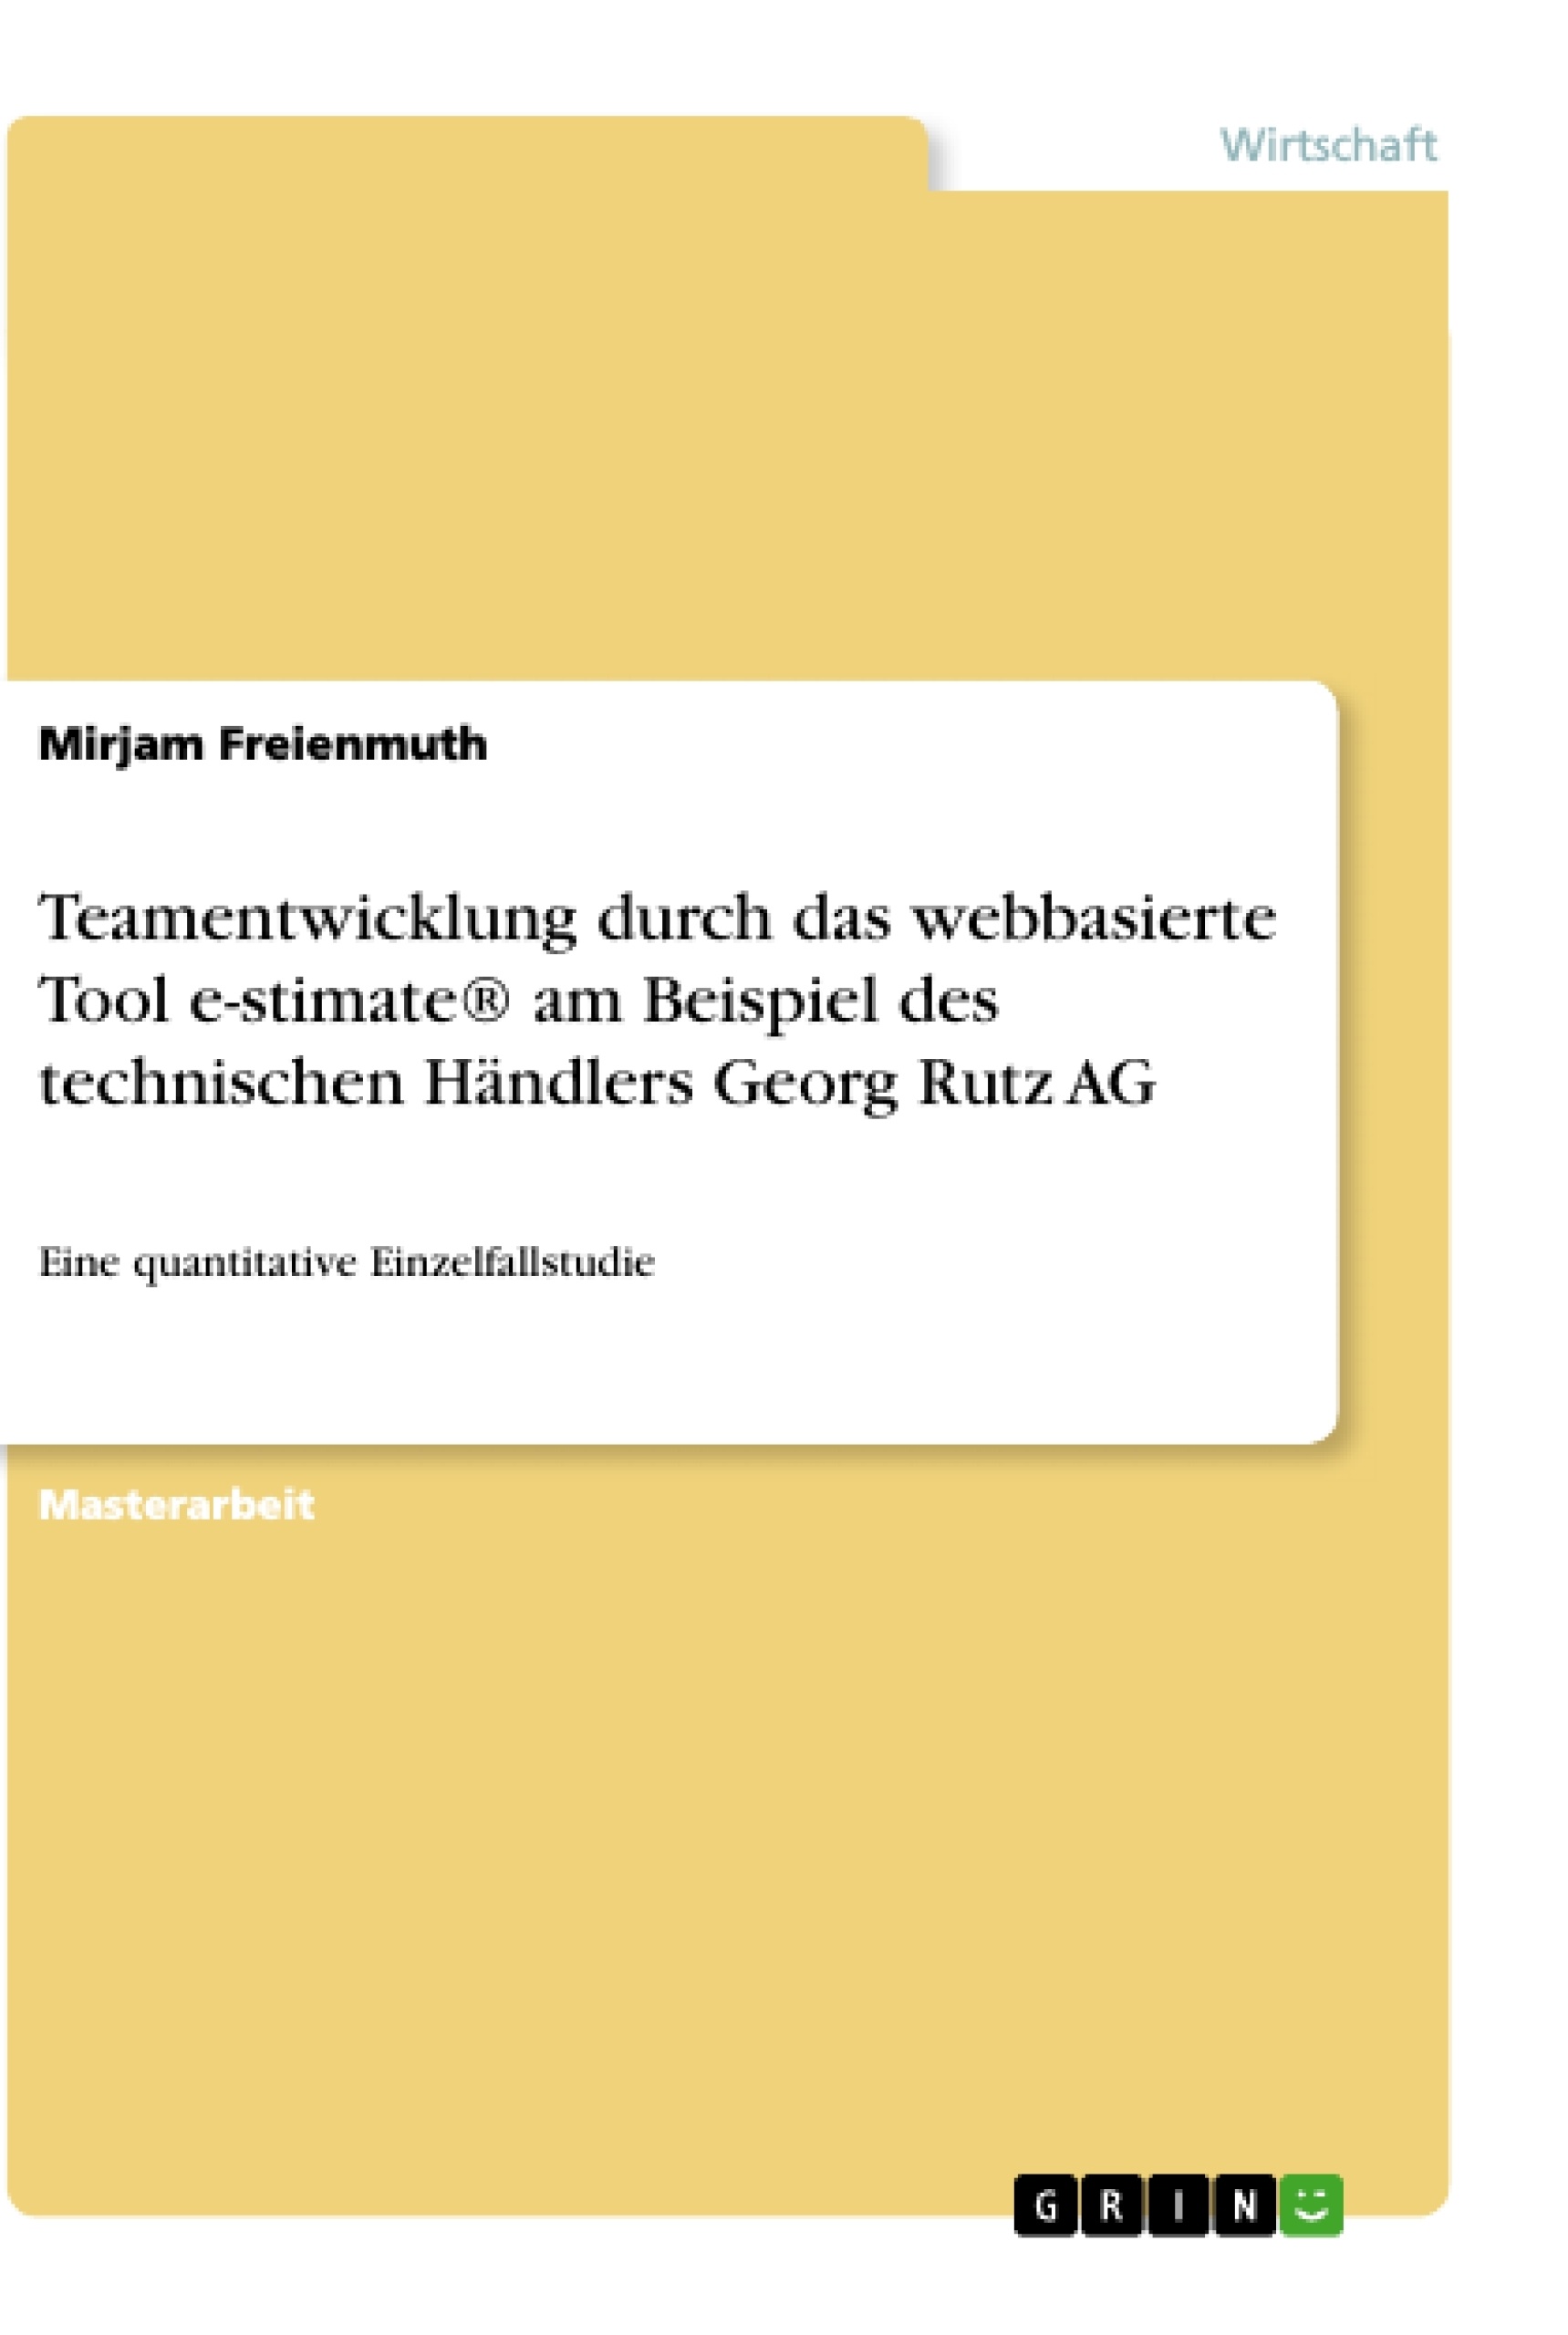 Titre: Teamentwicklung durch das webbasierte Tool e-stimate® am Beispiel des technischen Händlers Georg Rutz AG